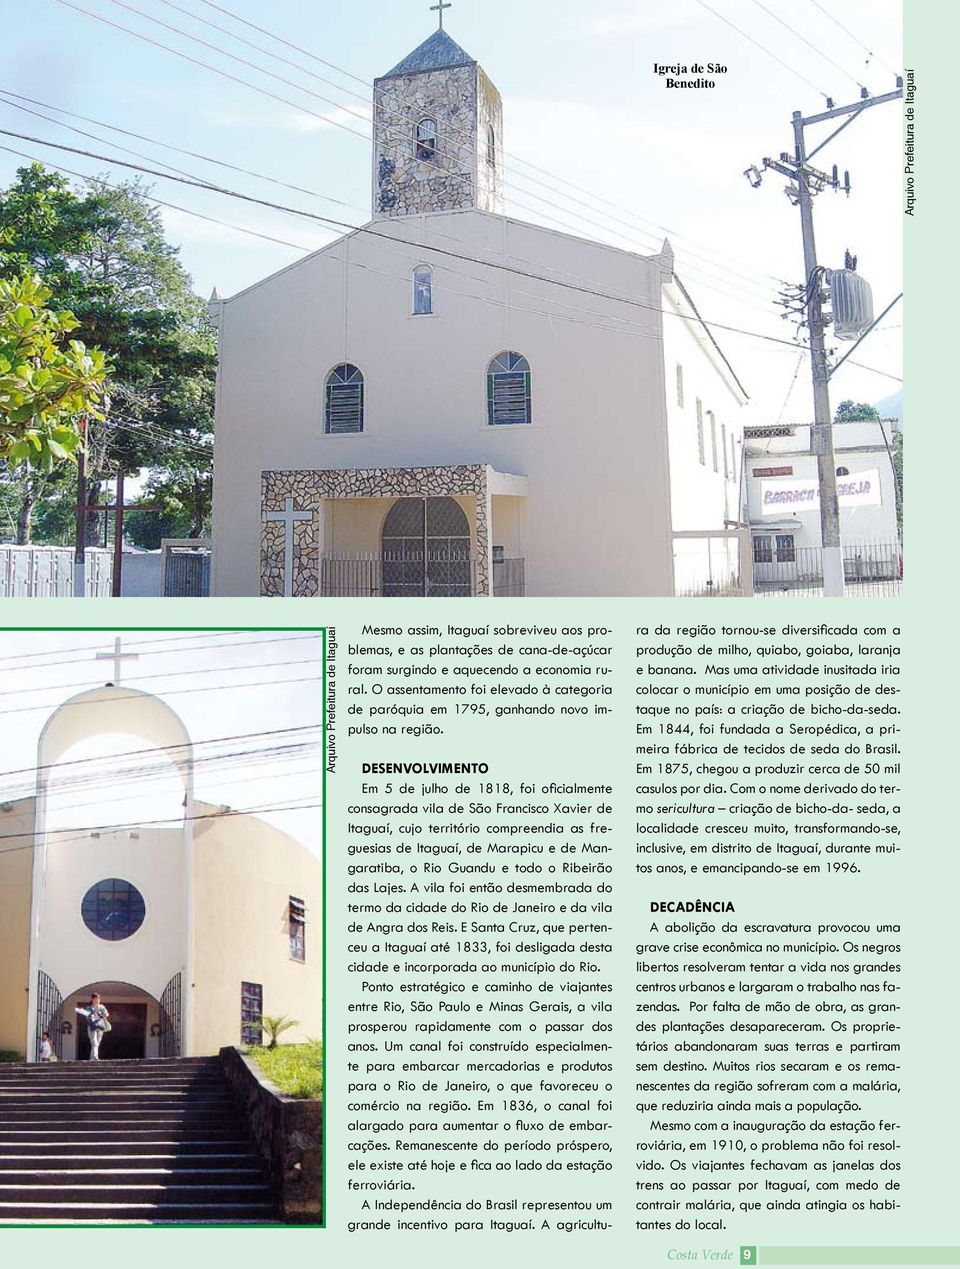 DESENVOLVIMENTO Em 5 de julho de 1818, foi oficialmente consagrada vila de São Francisco Xavier de Itaguaí, cujo território compreendia as freguesias de Itaguaí, de Marapicu e de Mangaratiba, o Rio